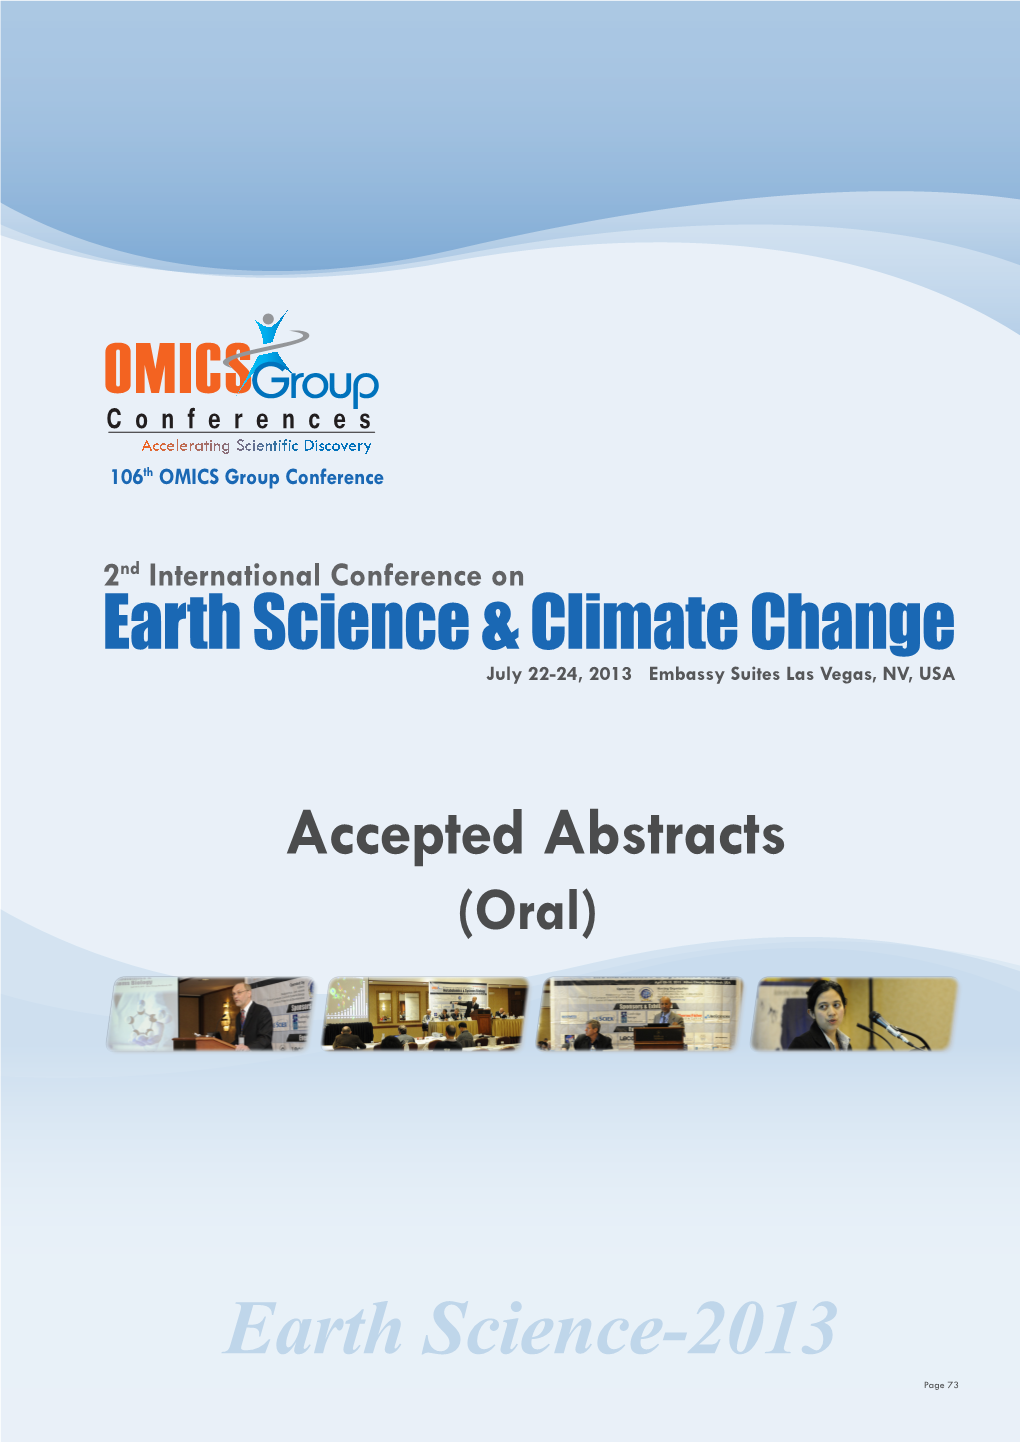 Earth Science-2013 Page 73 Fabio Alberto, J Earth Sci Climate Change 2013, 4:4